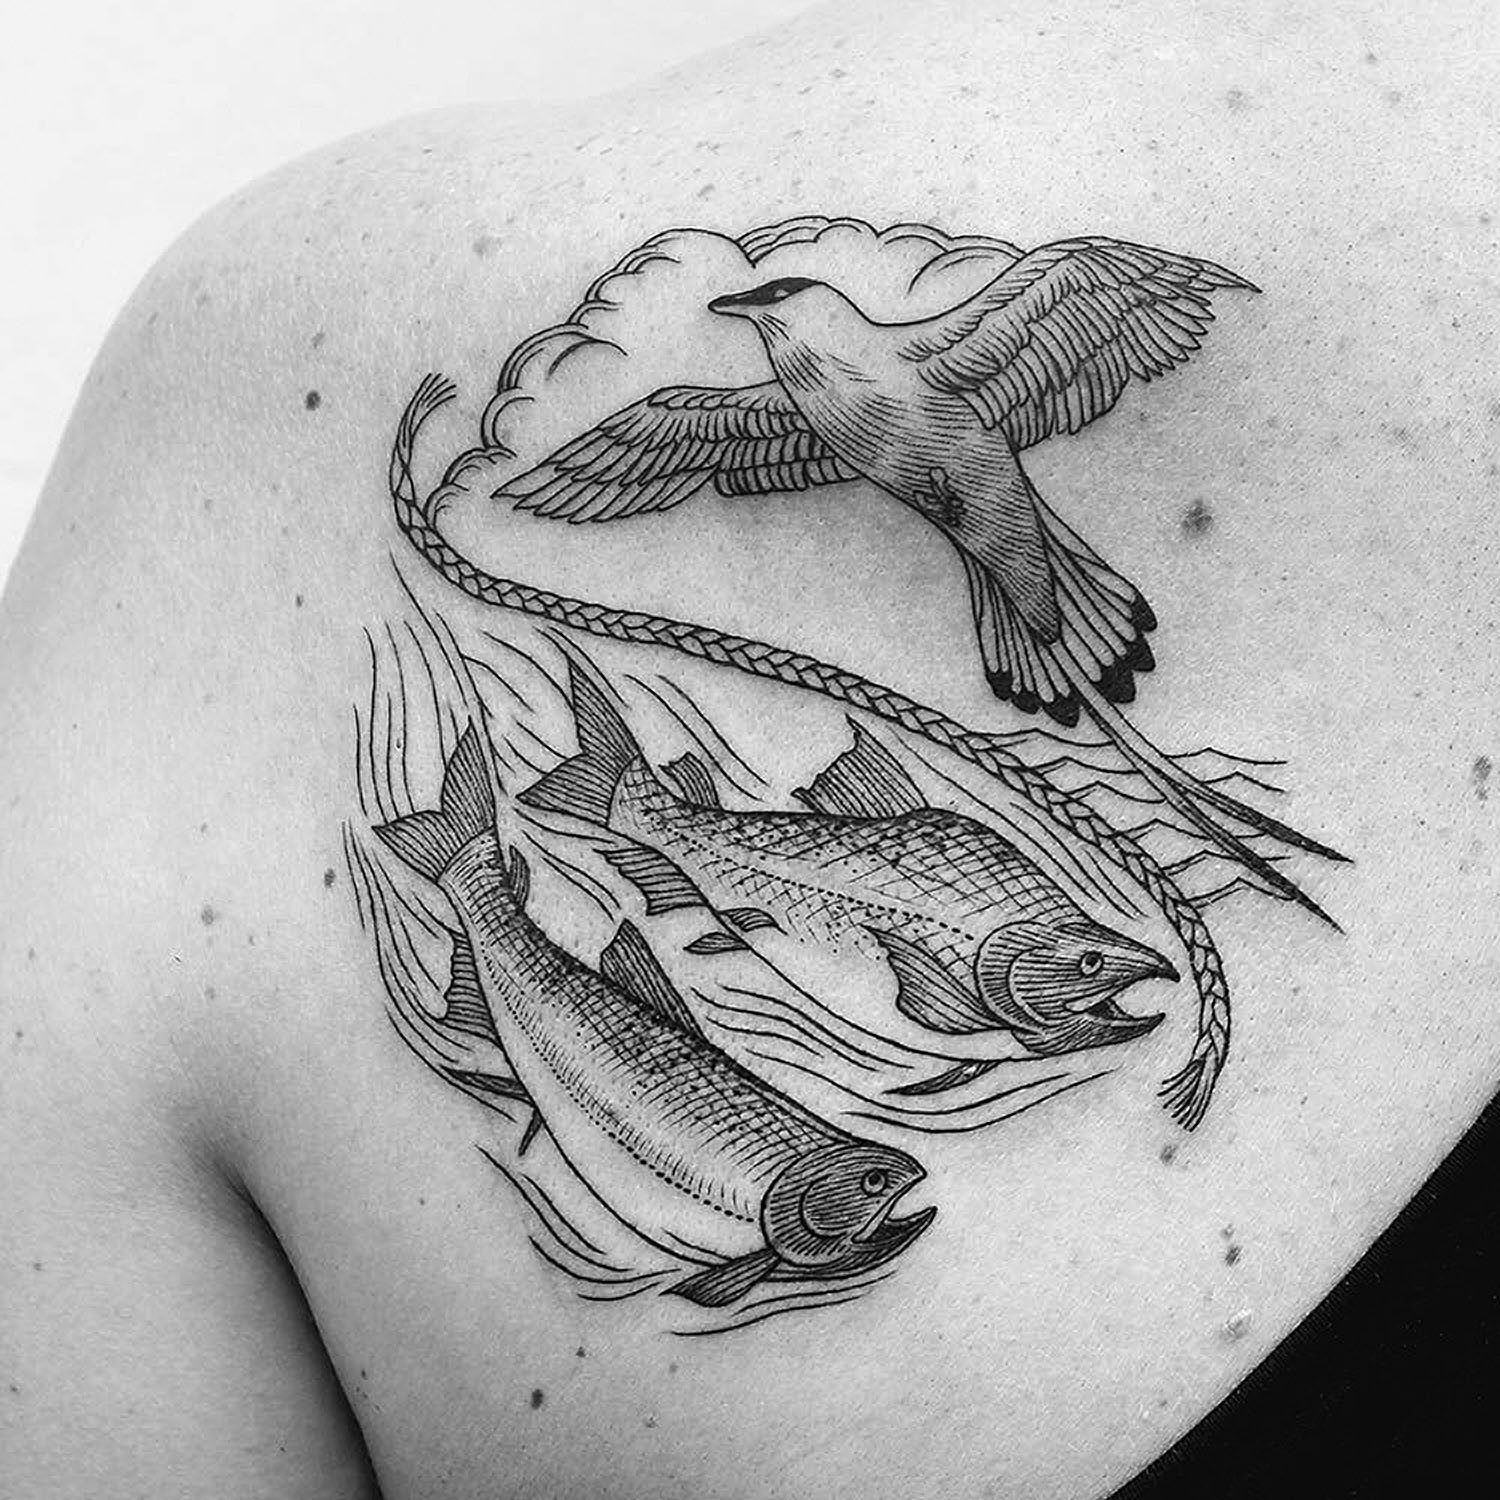 Bird tattoo on shoulder